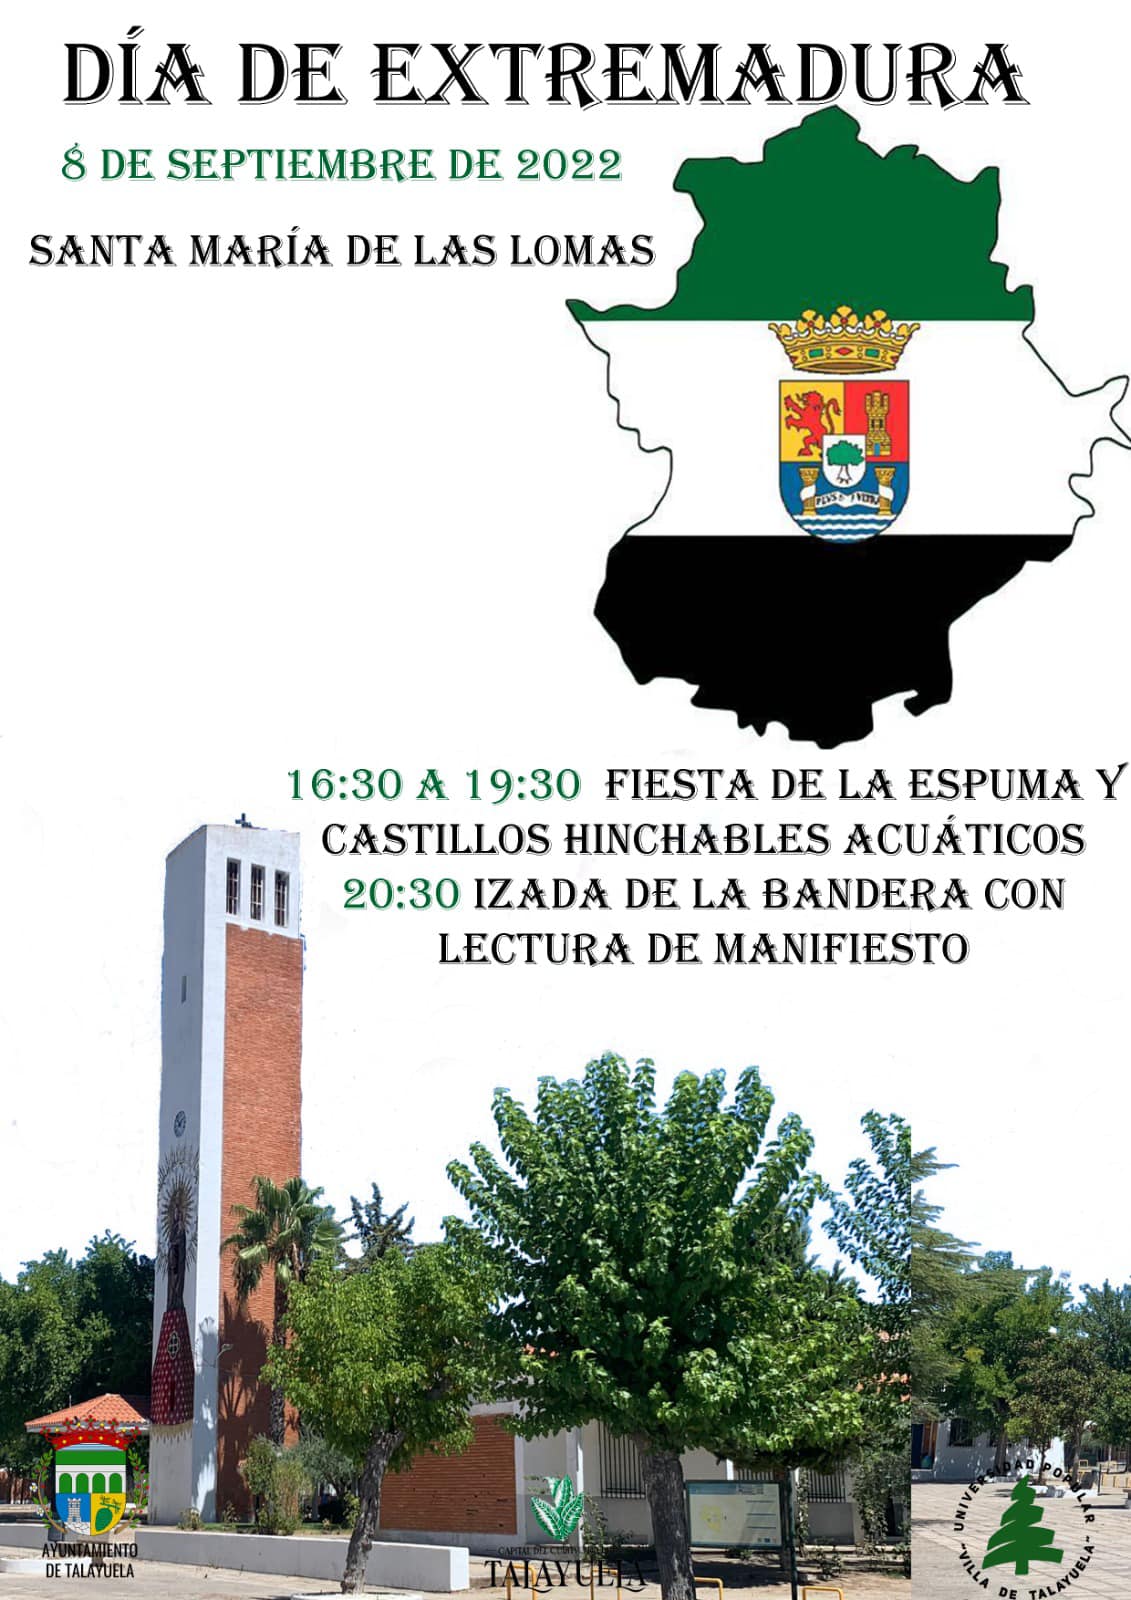 Dia De Extremadura 2023 ▷ Evento: Día de Extremadura (2022) - Santa María de las Lomas (Cáceres) |  Cadena Silva